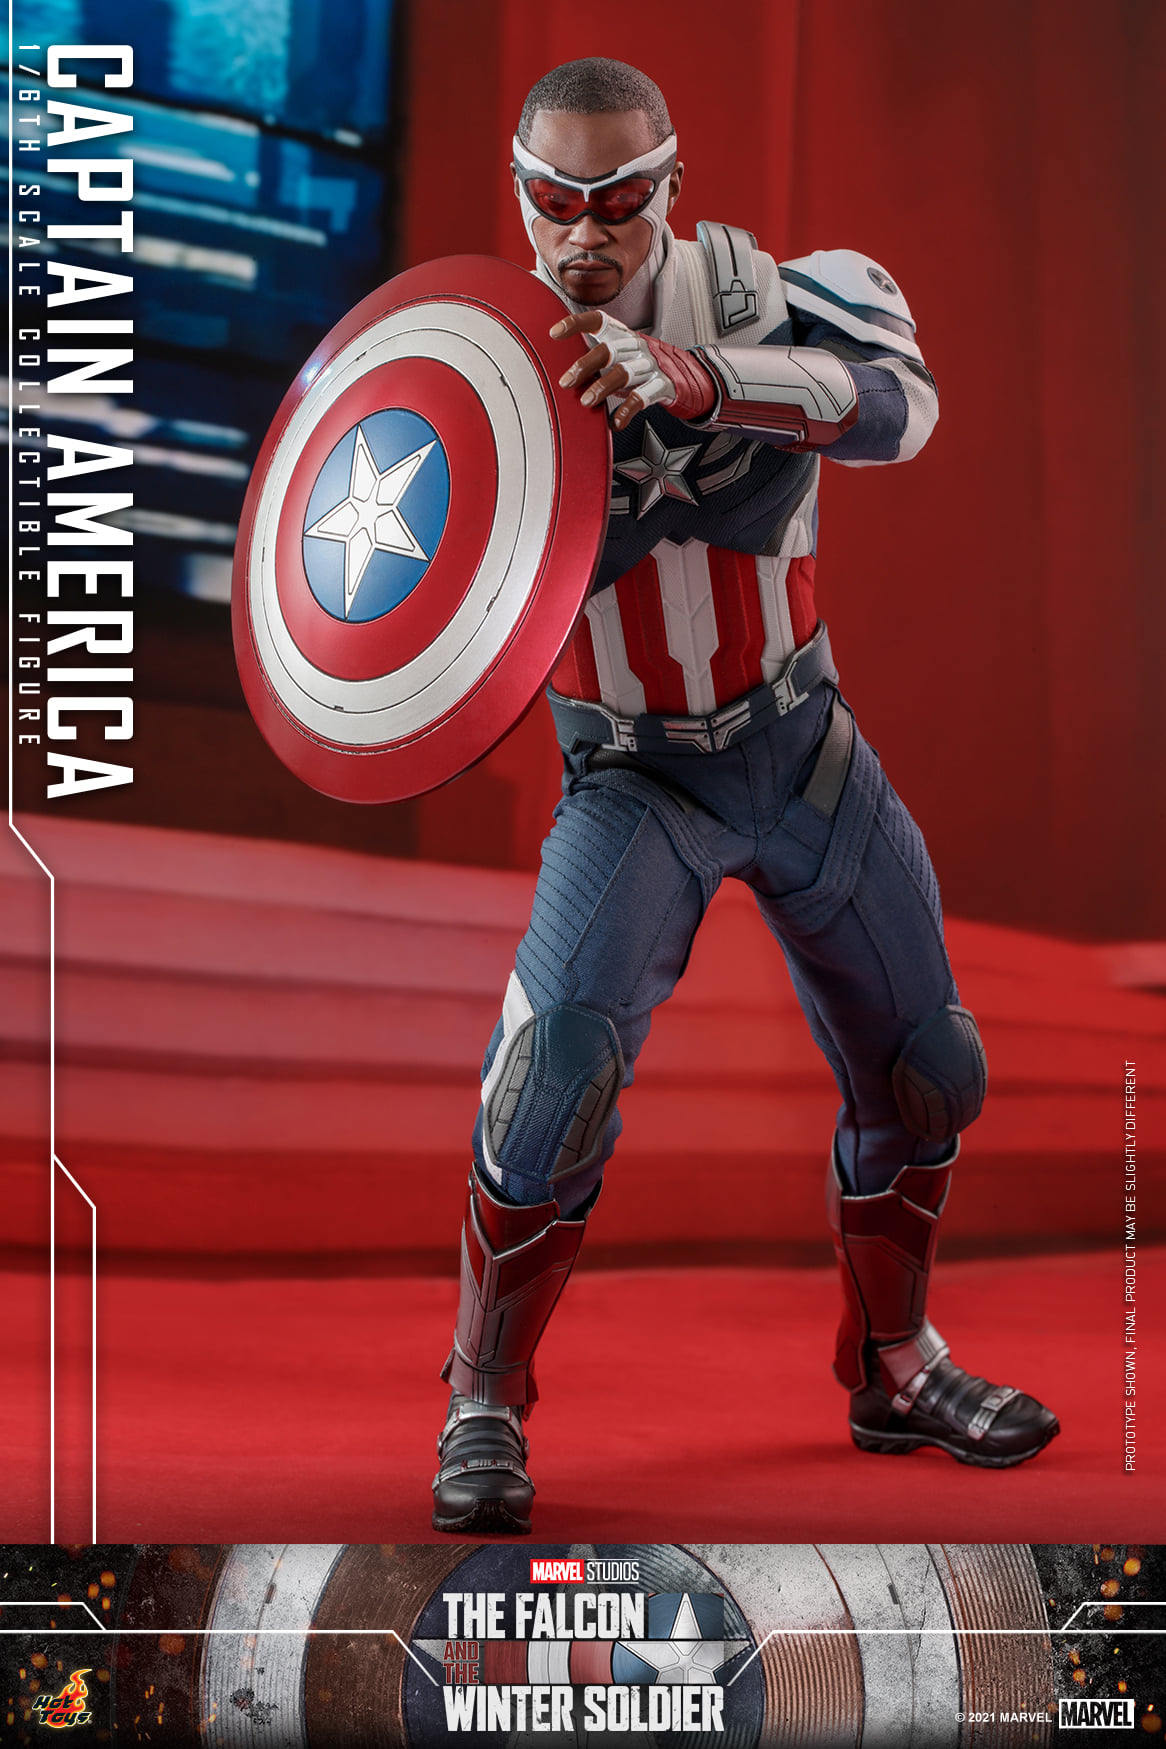 Captain America 22